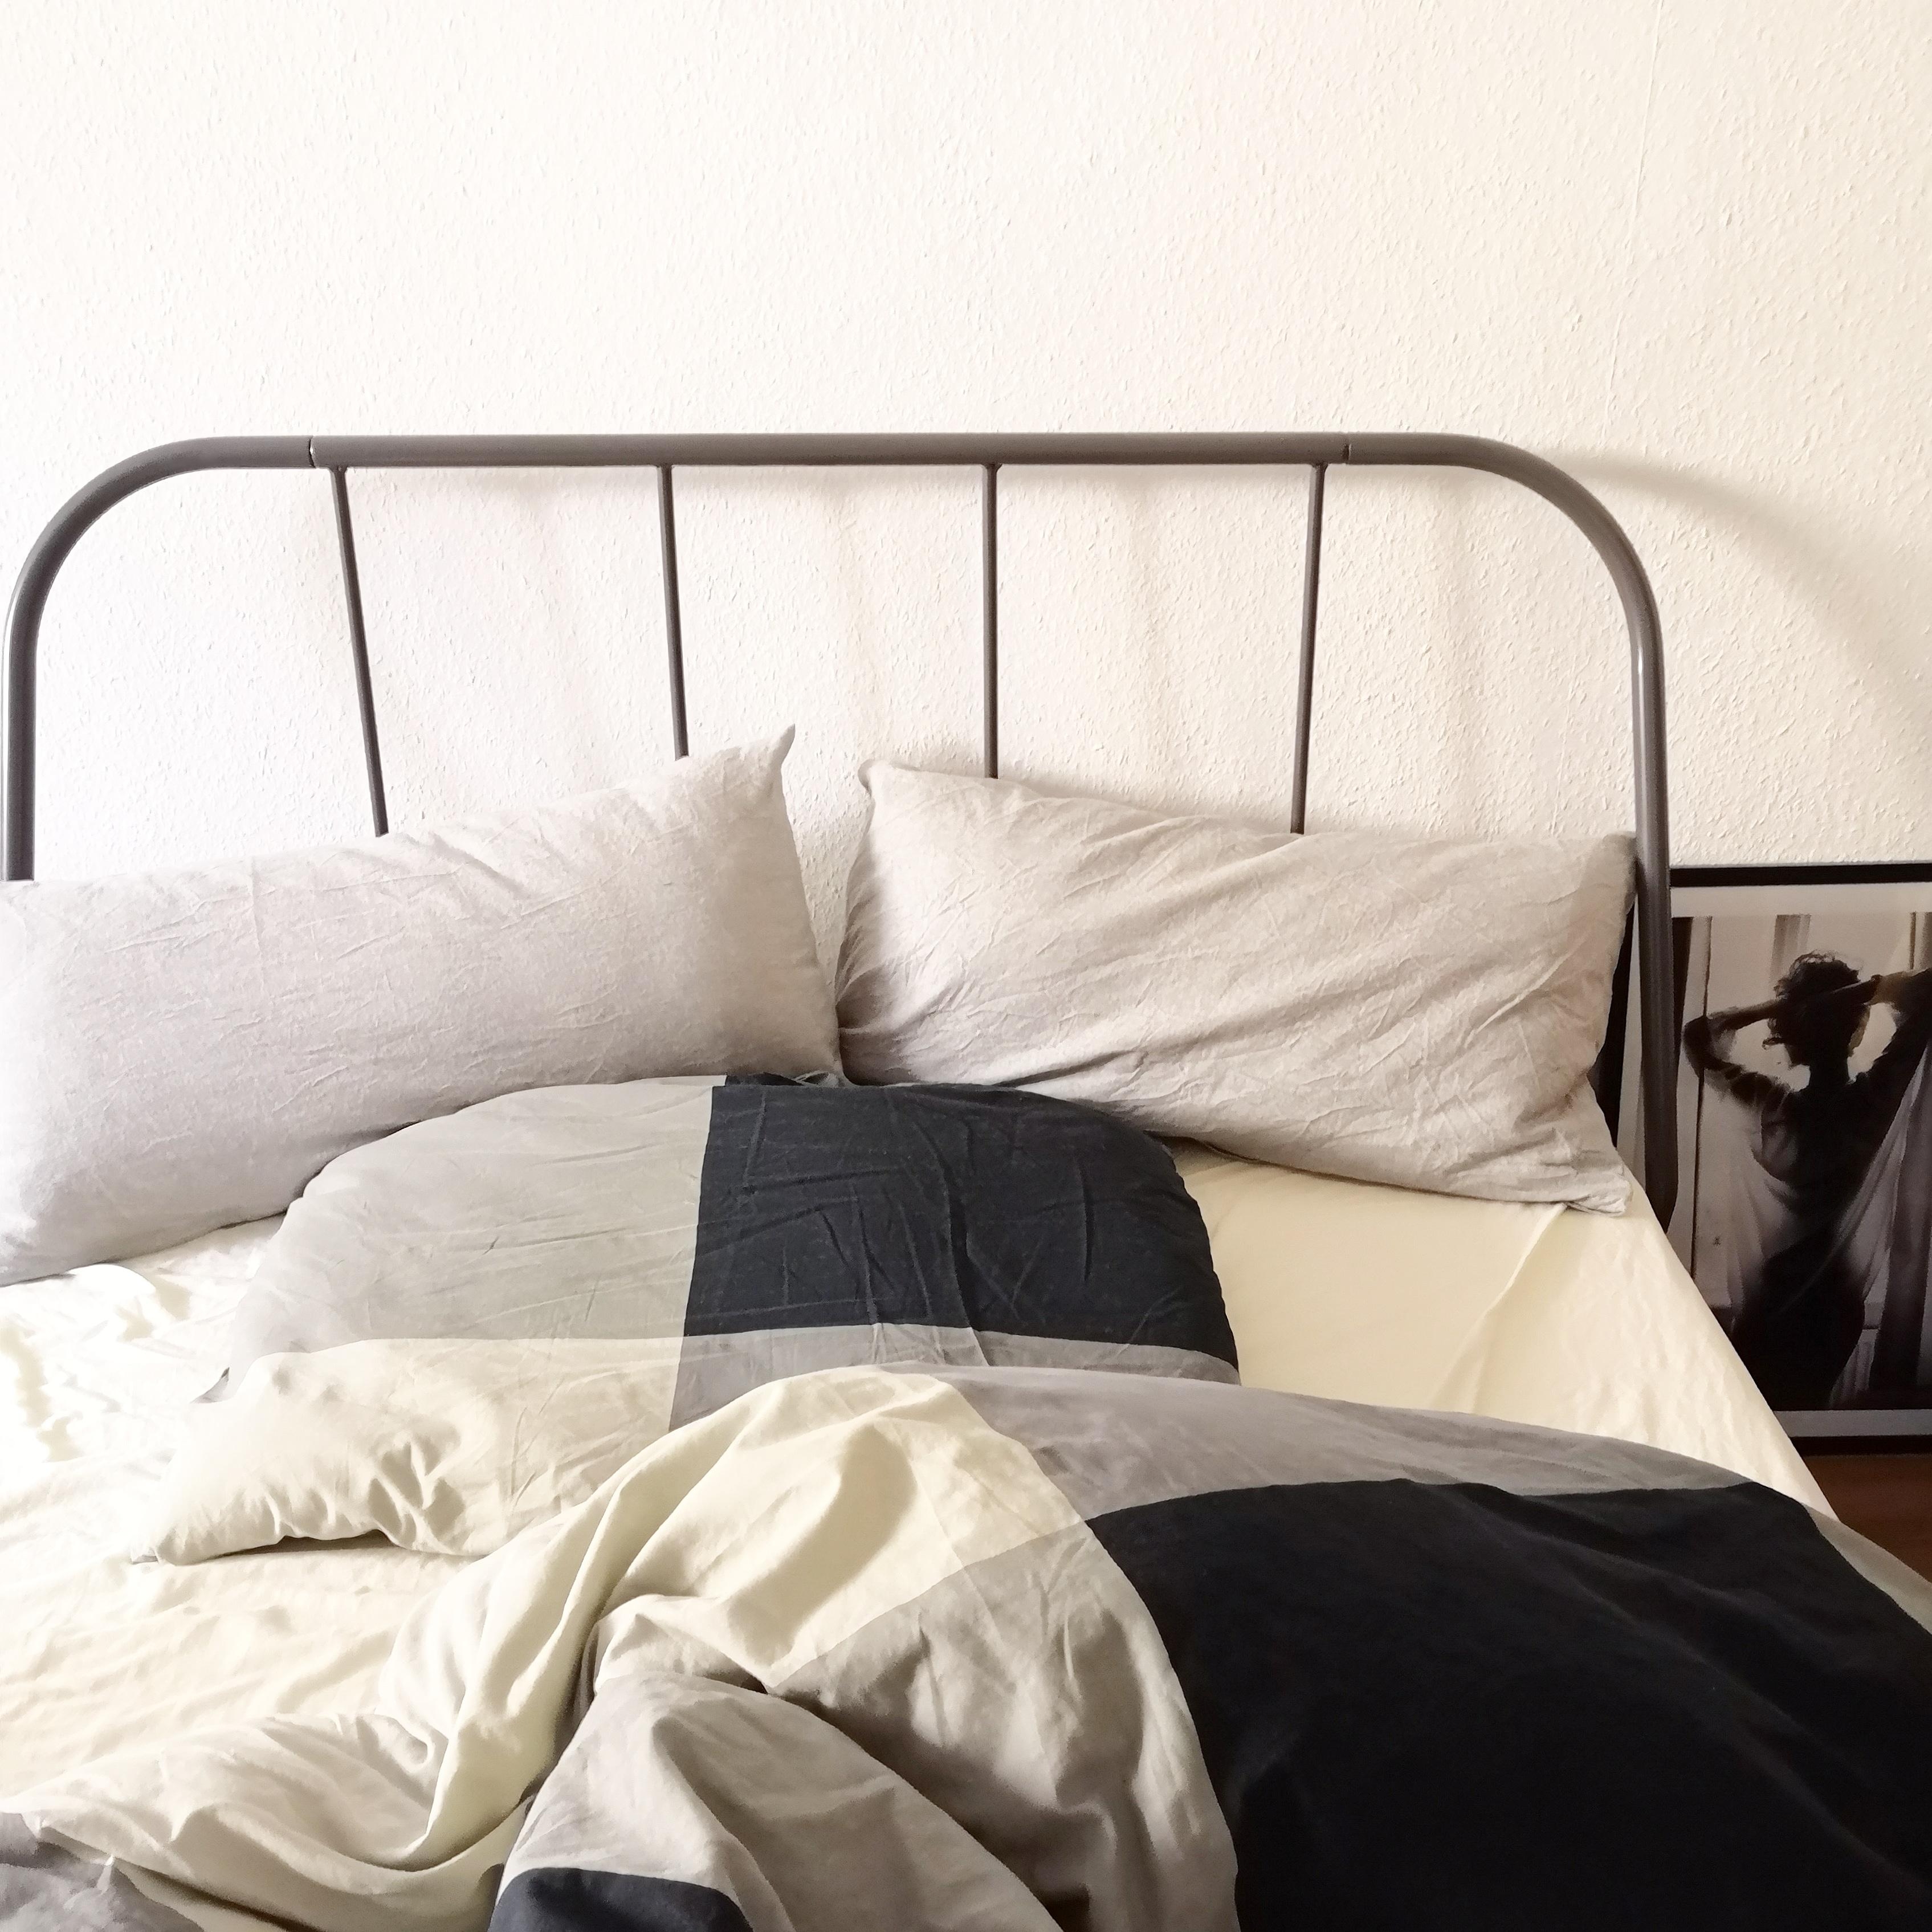 #modernwohnen - neuer Lebensmittelpunkt Bett oder Couch. 👍 #livingchallenge 